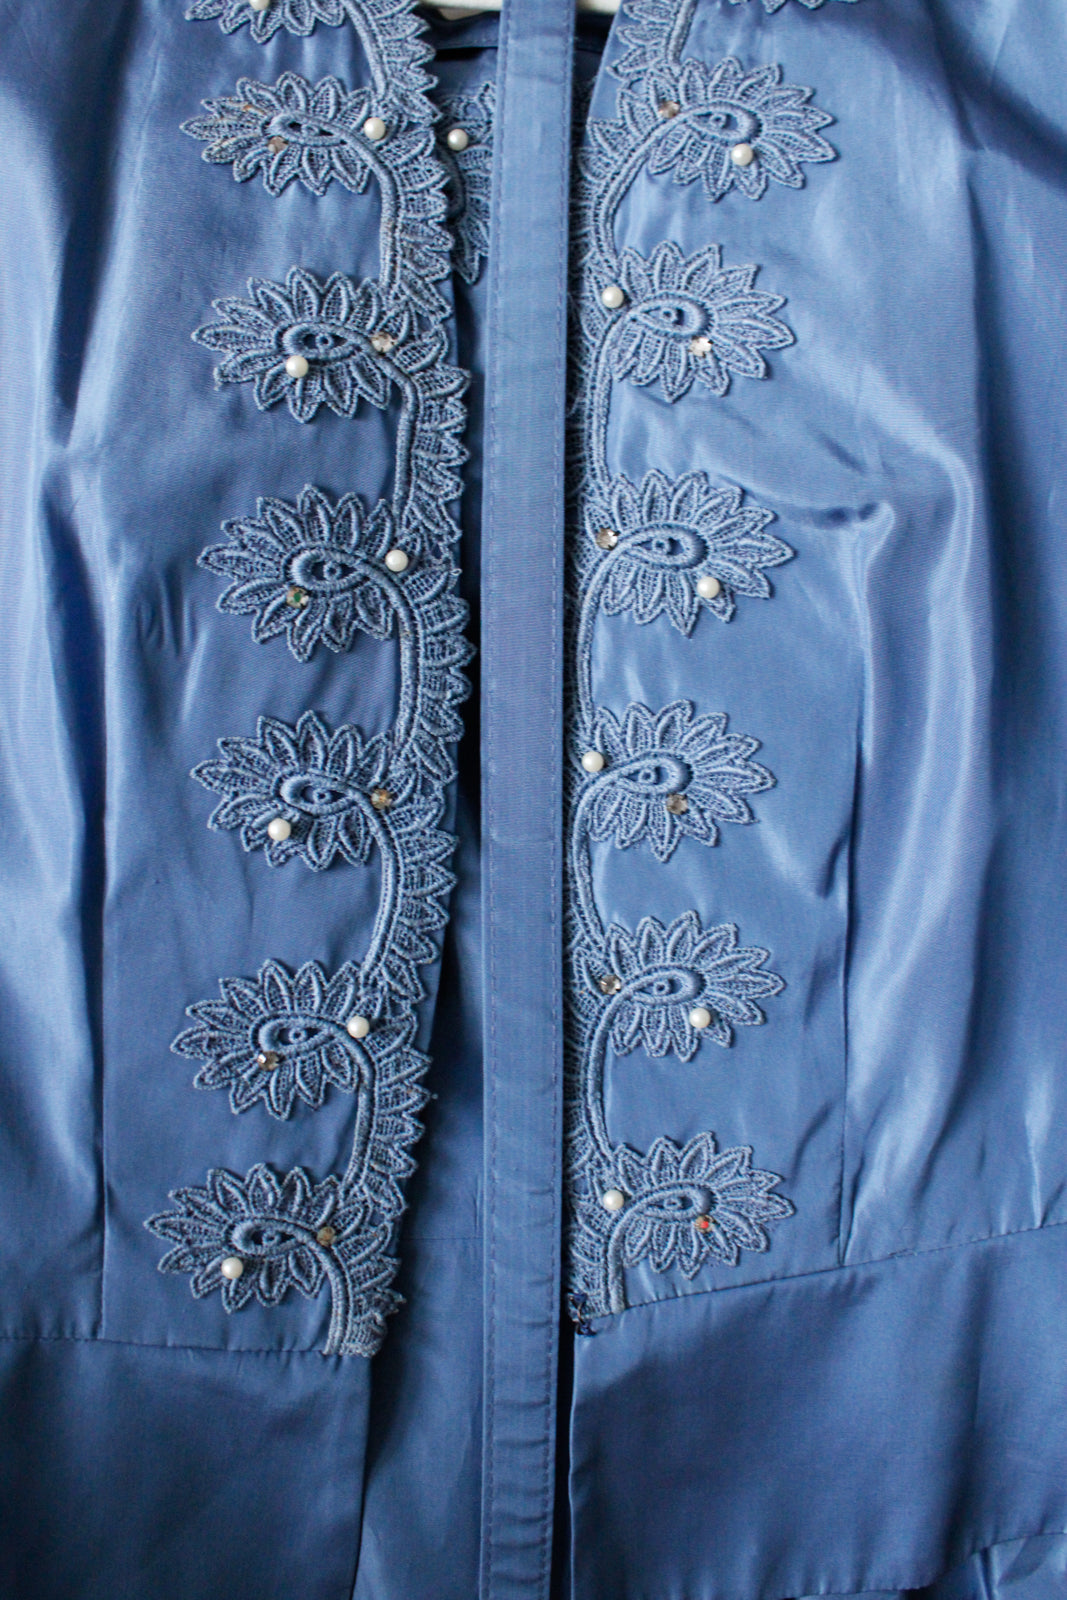 1950s Ann Kauffman Taffeta Dress & Jacket - Medium